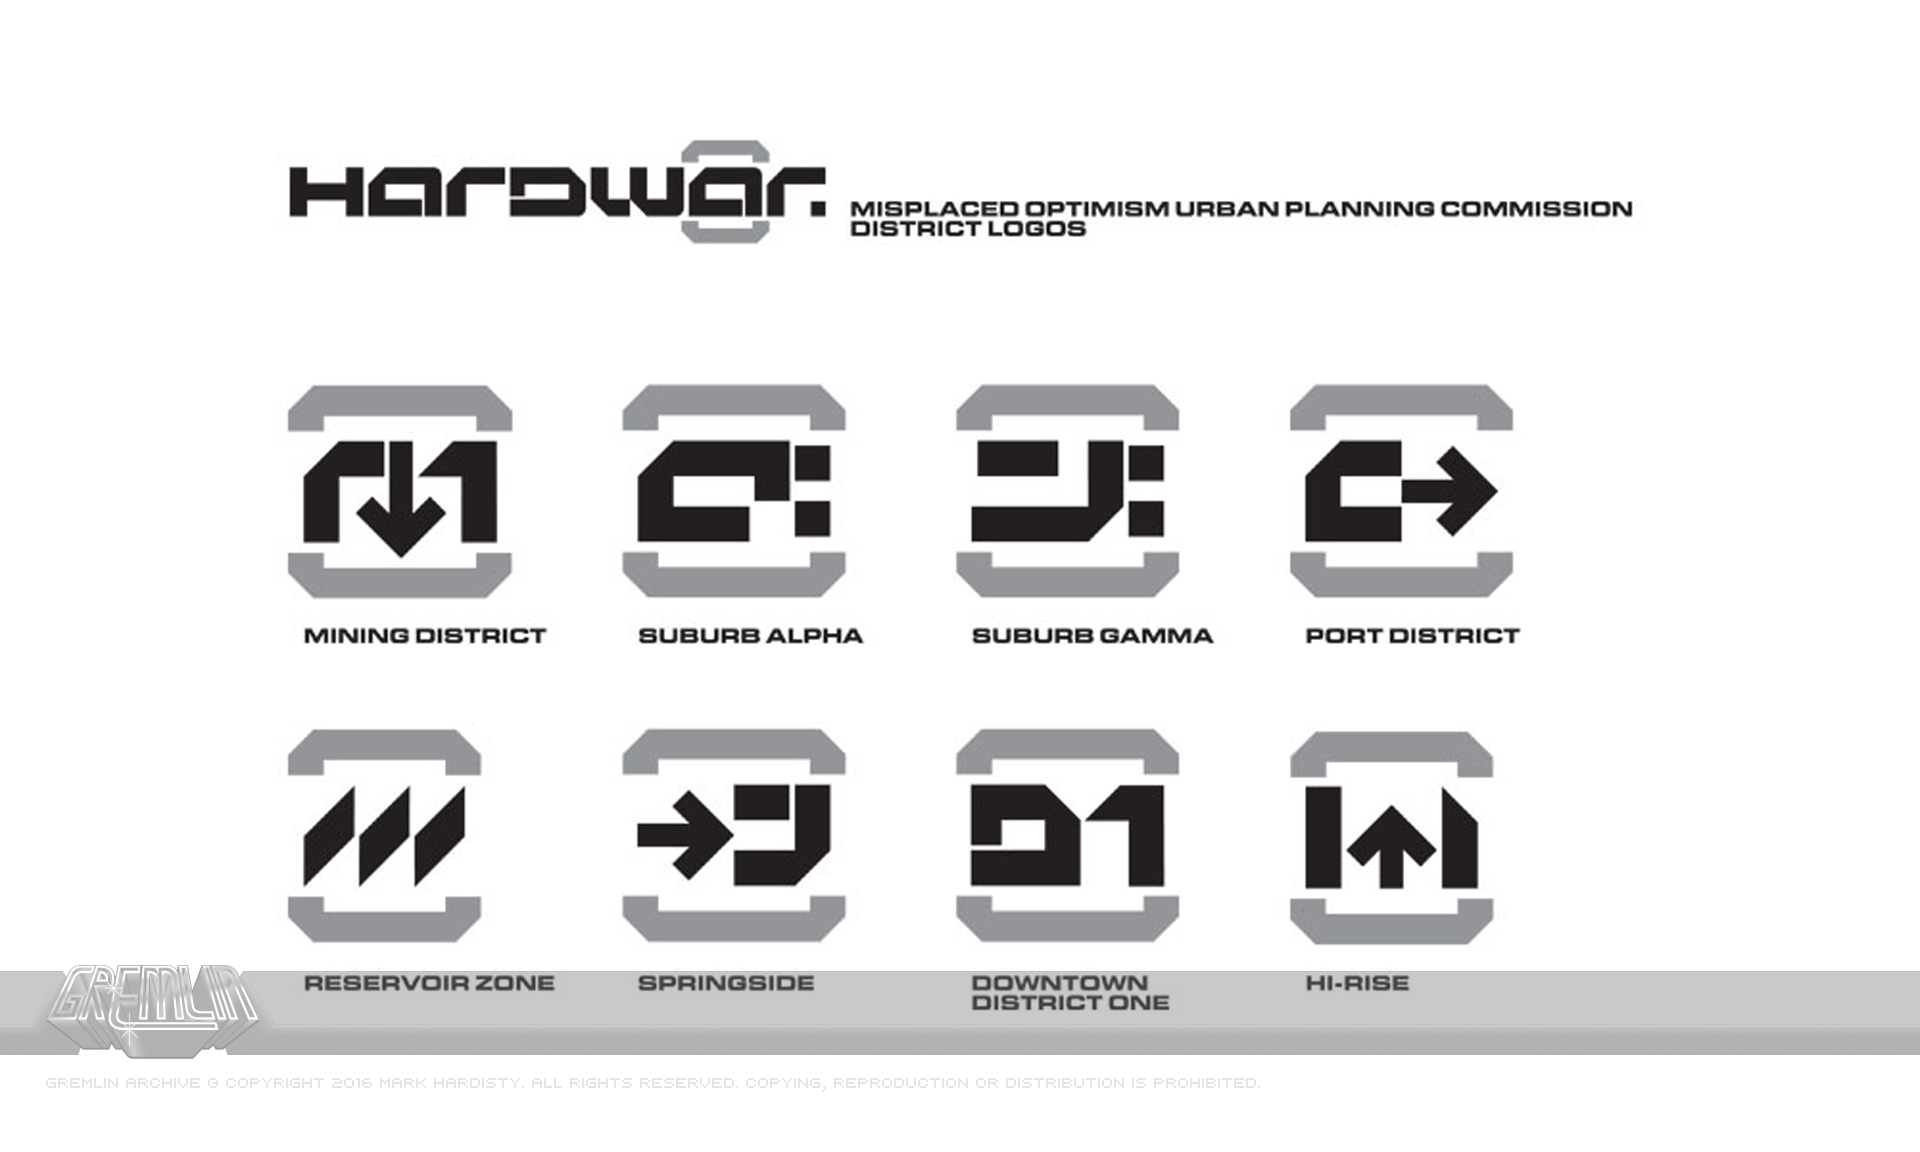 Hardwar – District Logos